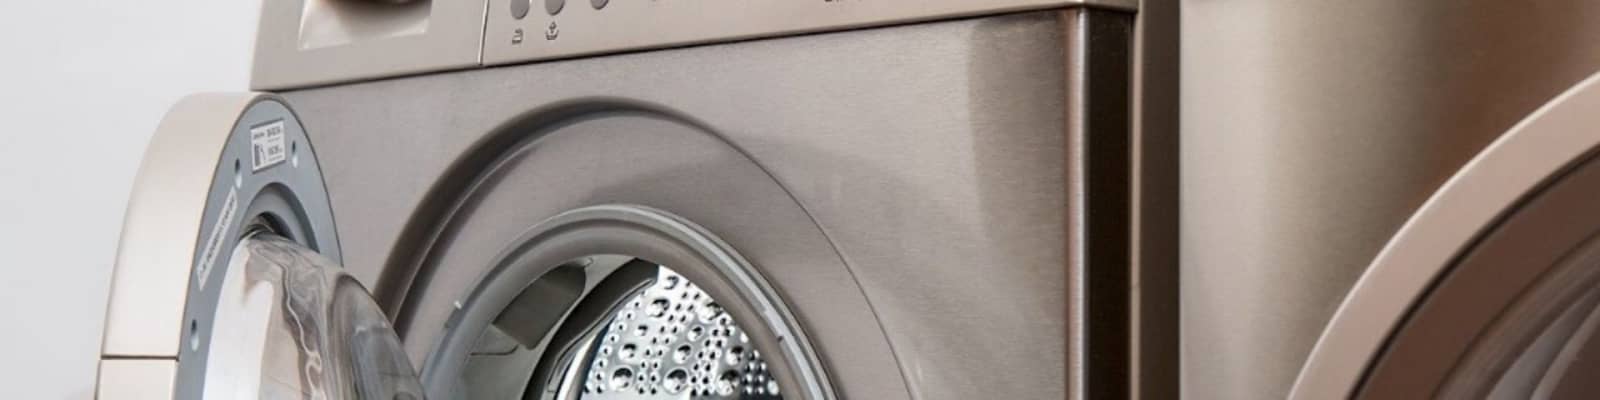 washing machine repairs pros in Roodepoort